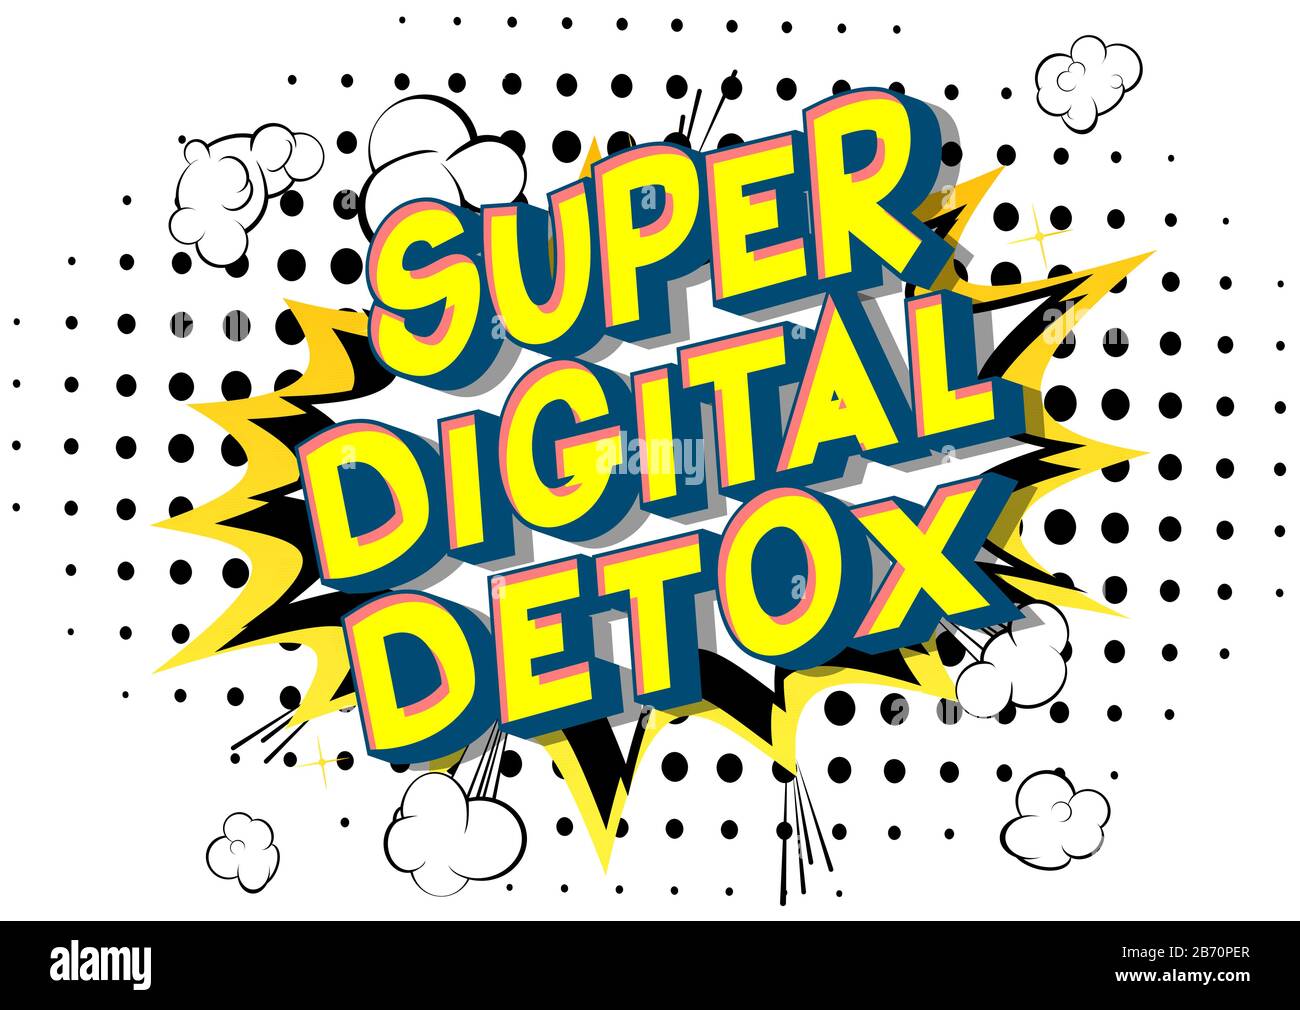 Vector illustrato fumetto stile Super Digital Detox testo. Illustrazione Vettoriale